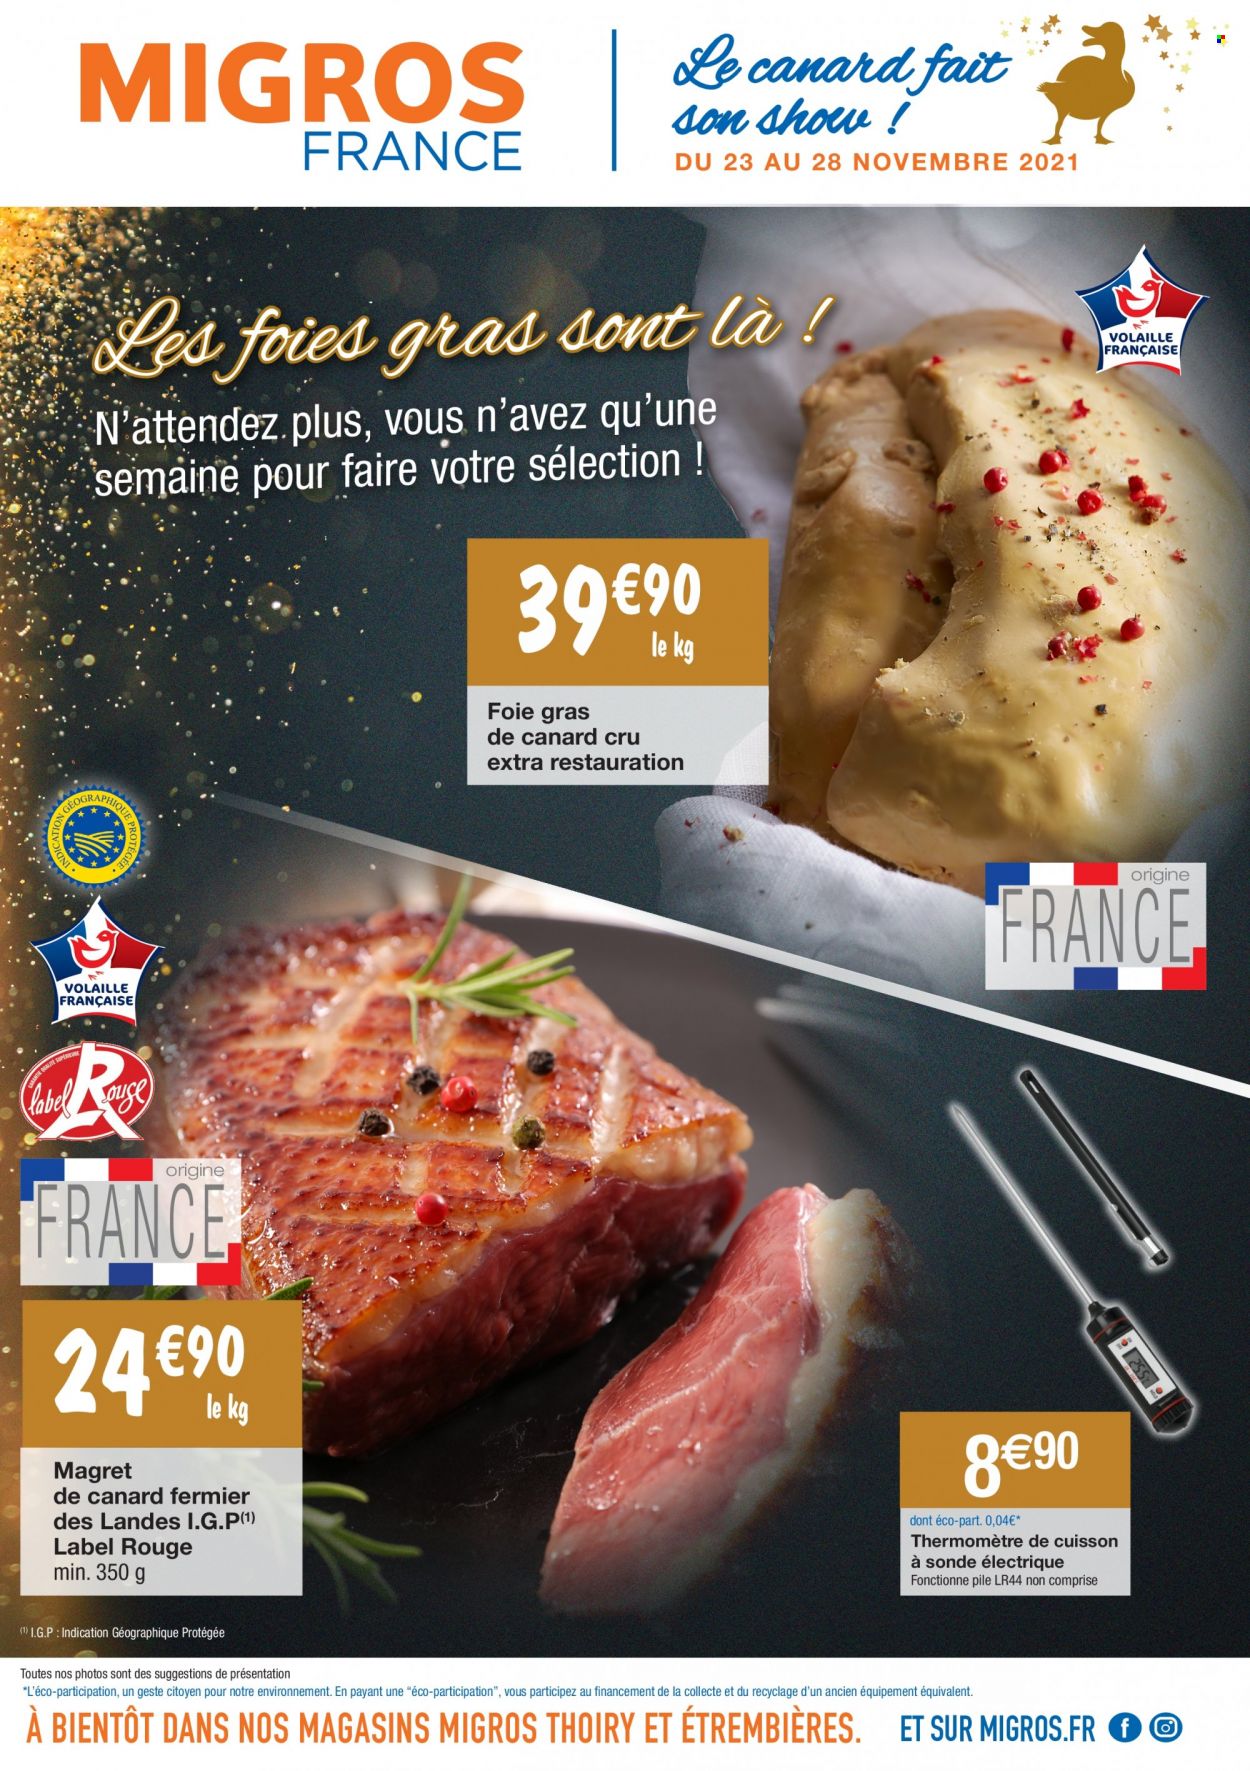 thumbnail - Catalogue Migros France - 23/11/2021 - 28/11/2021 - Produits soldés - magret de canard, foie gras, thermomètre. Page 1.